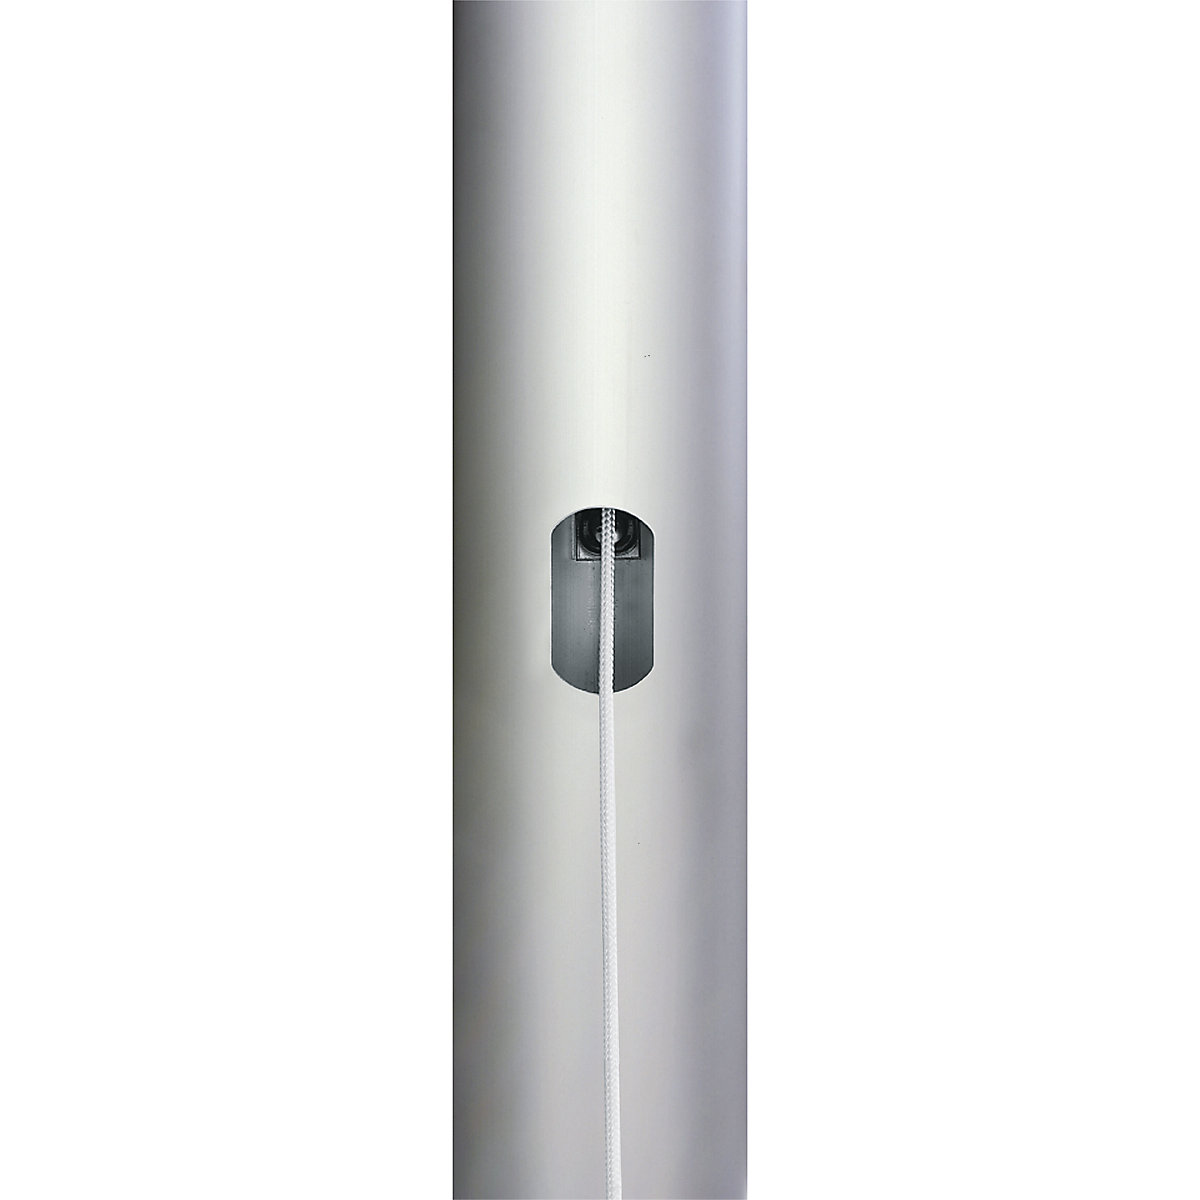 Mannus – PIRAT aluminium flag pole (Product illustration 6)